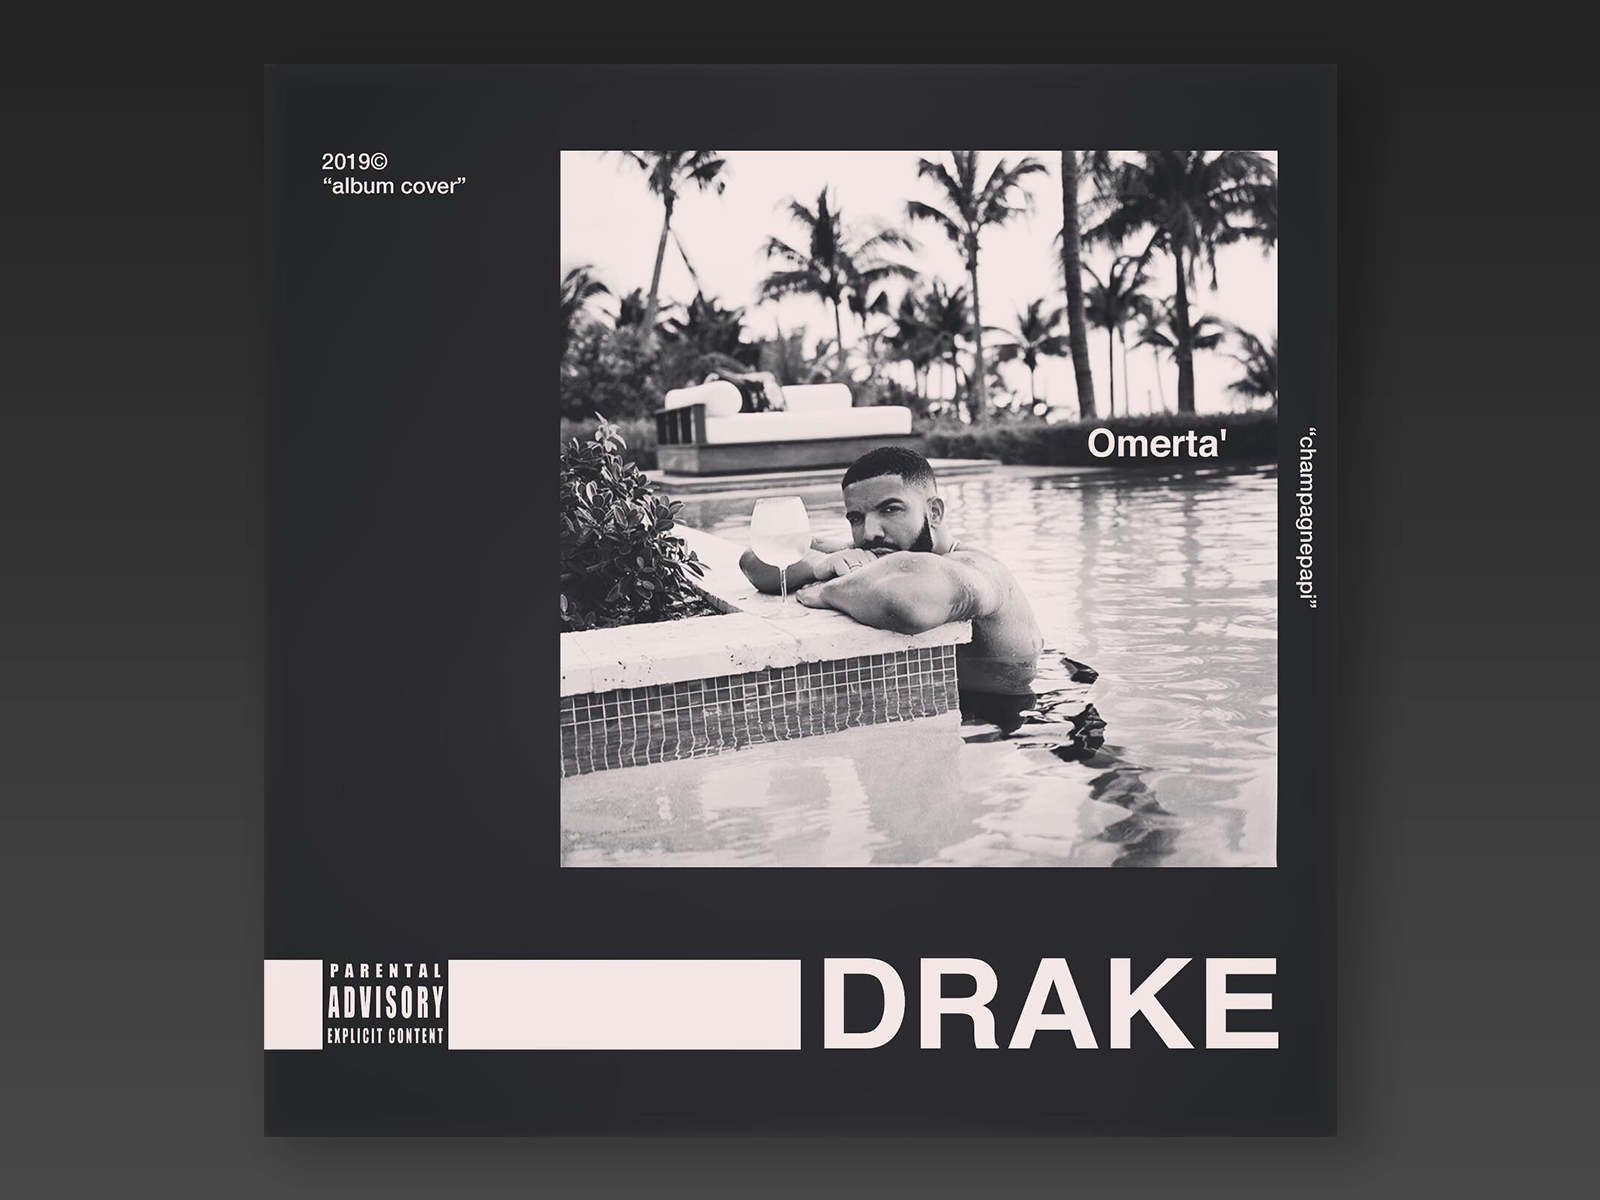 Drake "album cover" by Arthur K on Dribbble